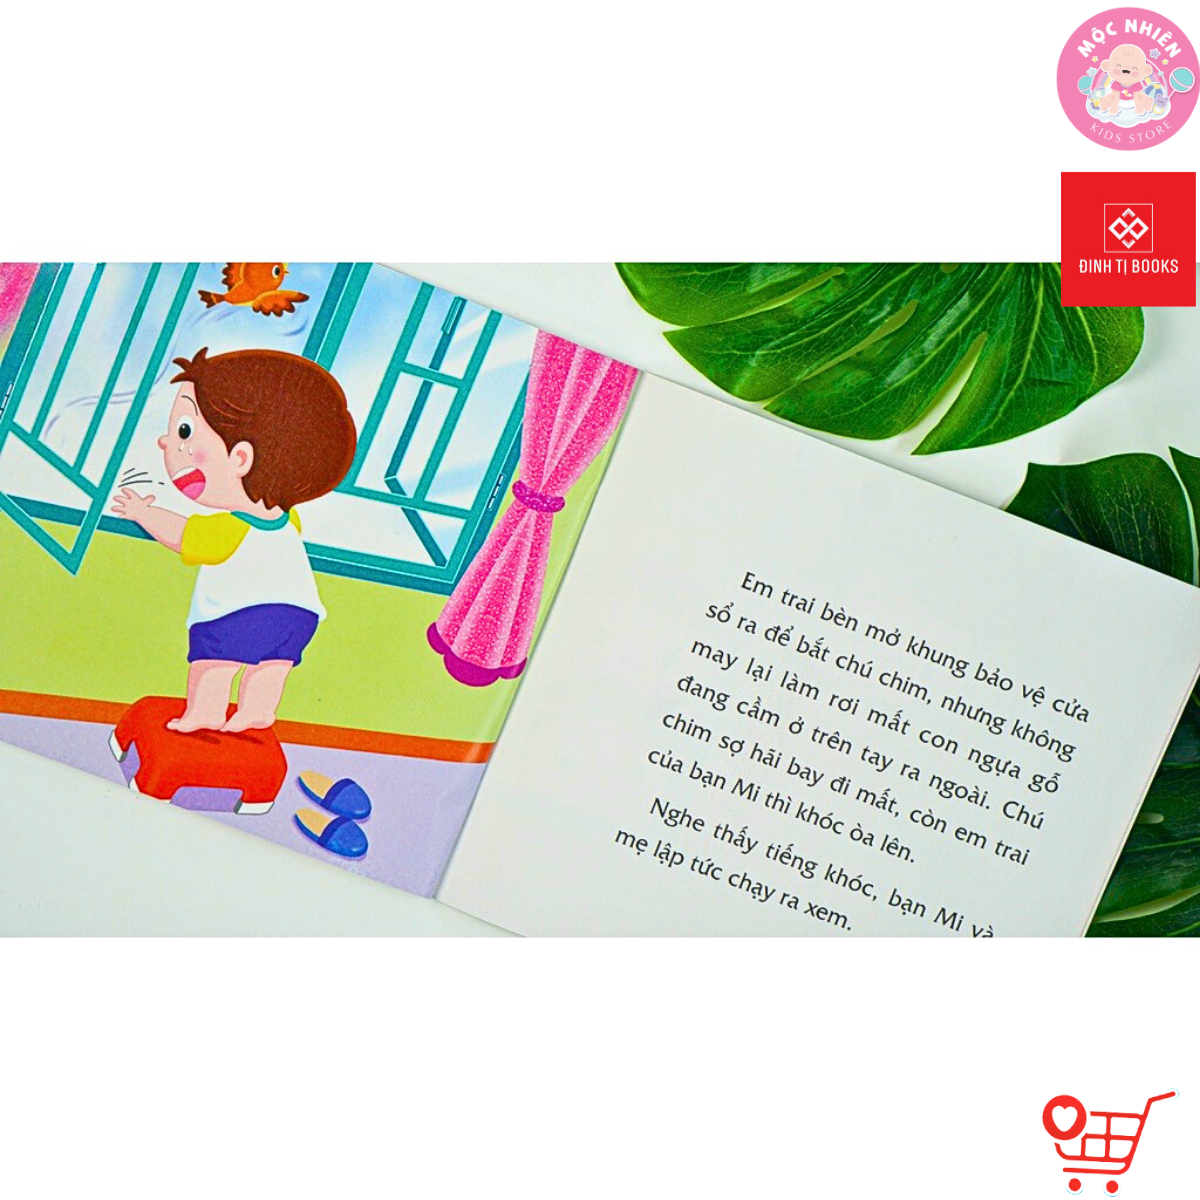 Sách Thiếu Nhi - Dạy Trẻ Kỹ Năng An Toàn - Dành cho bé từ 2-8 tuổi - Đinh Tị Books